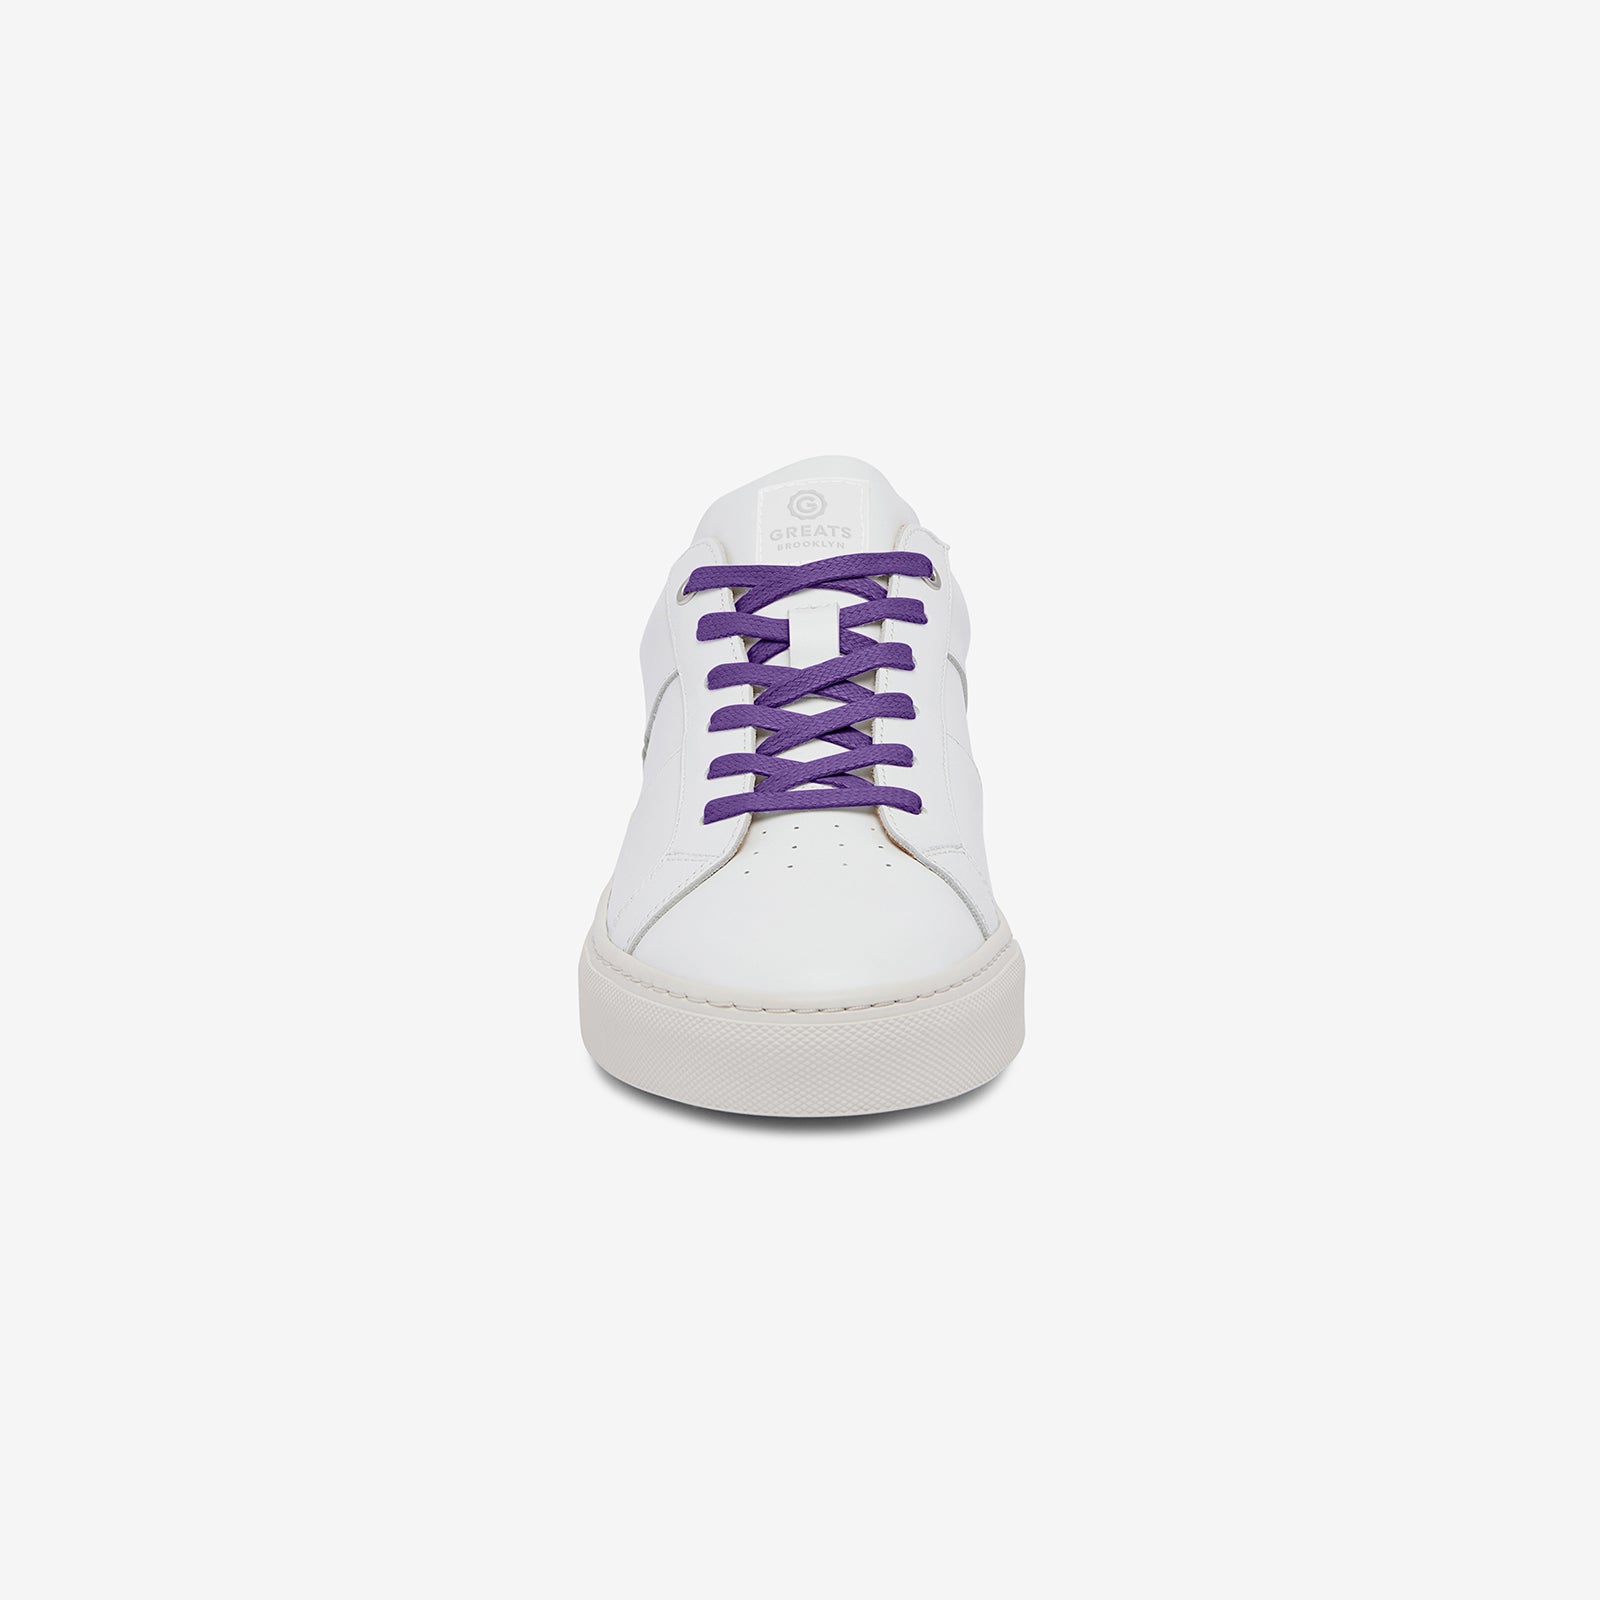 GREATS Premium Shoelaces - Purple